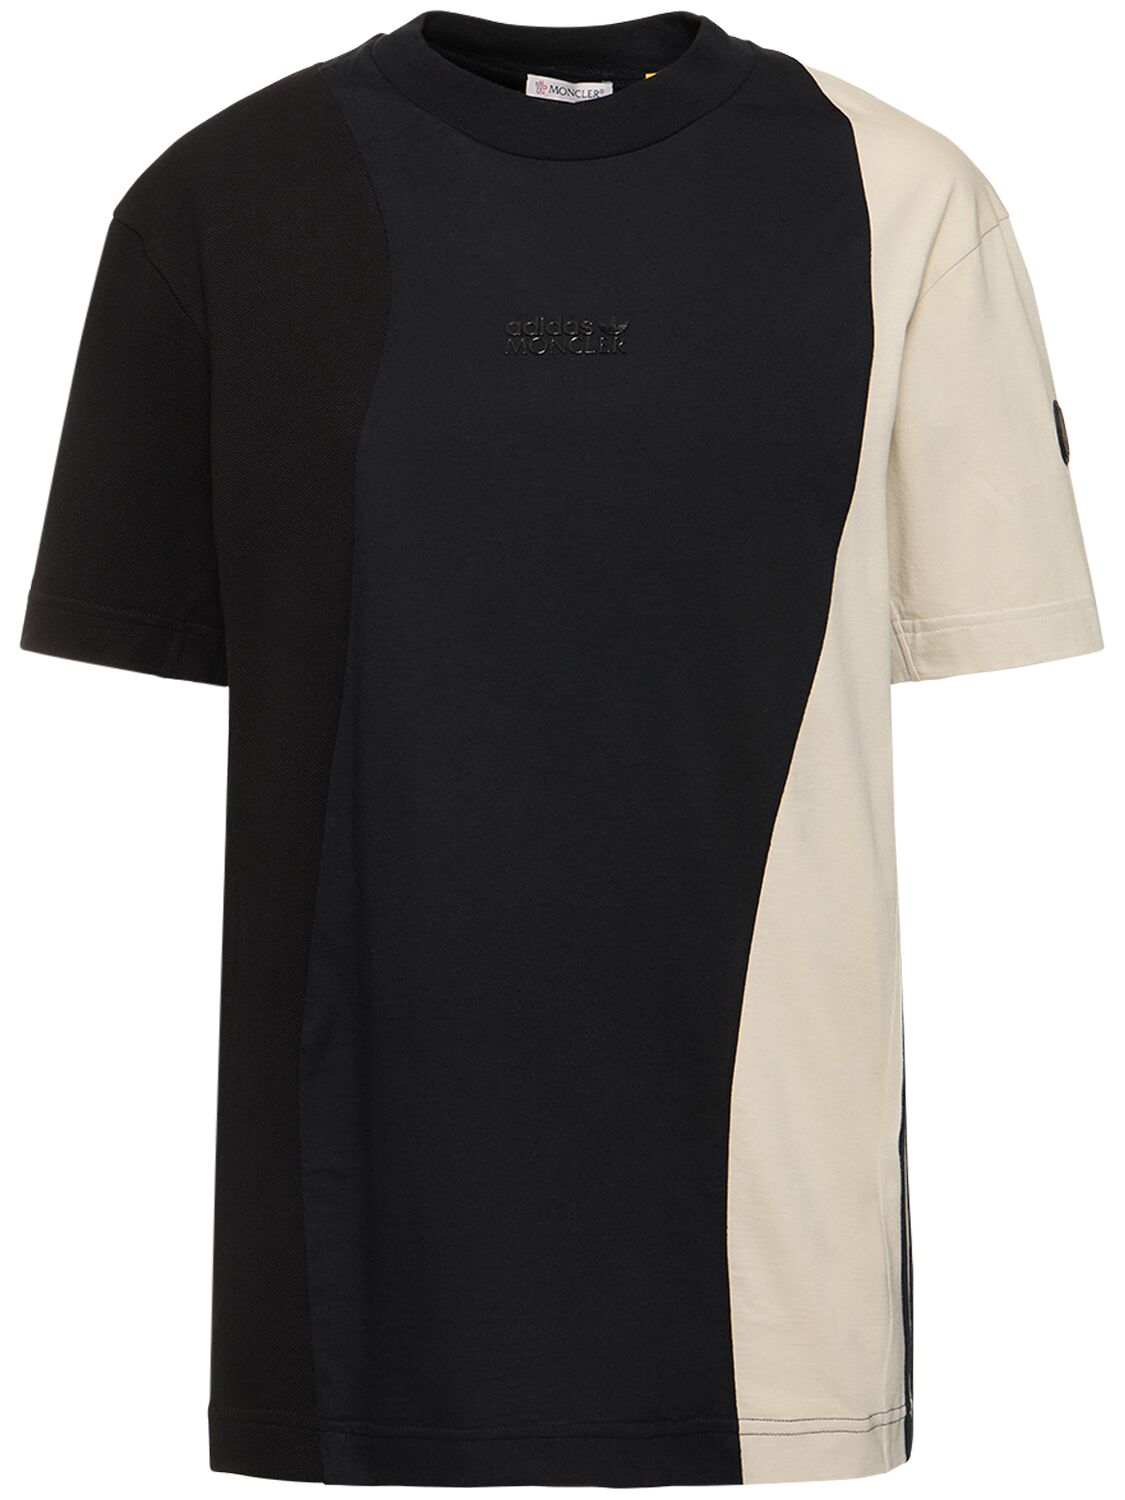 Moncler Genius Moncler X Adidas Cotton T-shirt In Black,grey